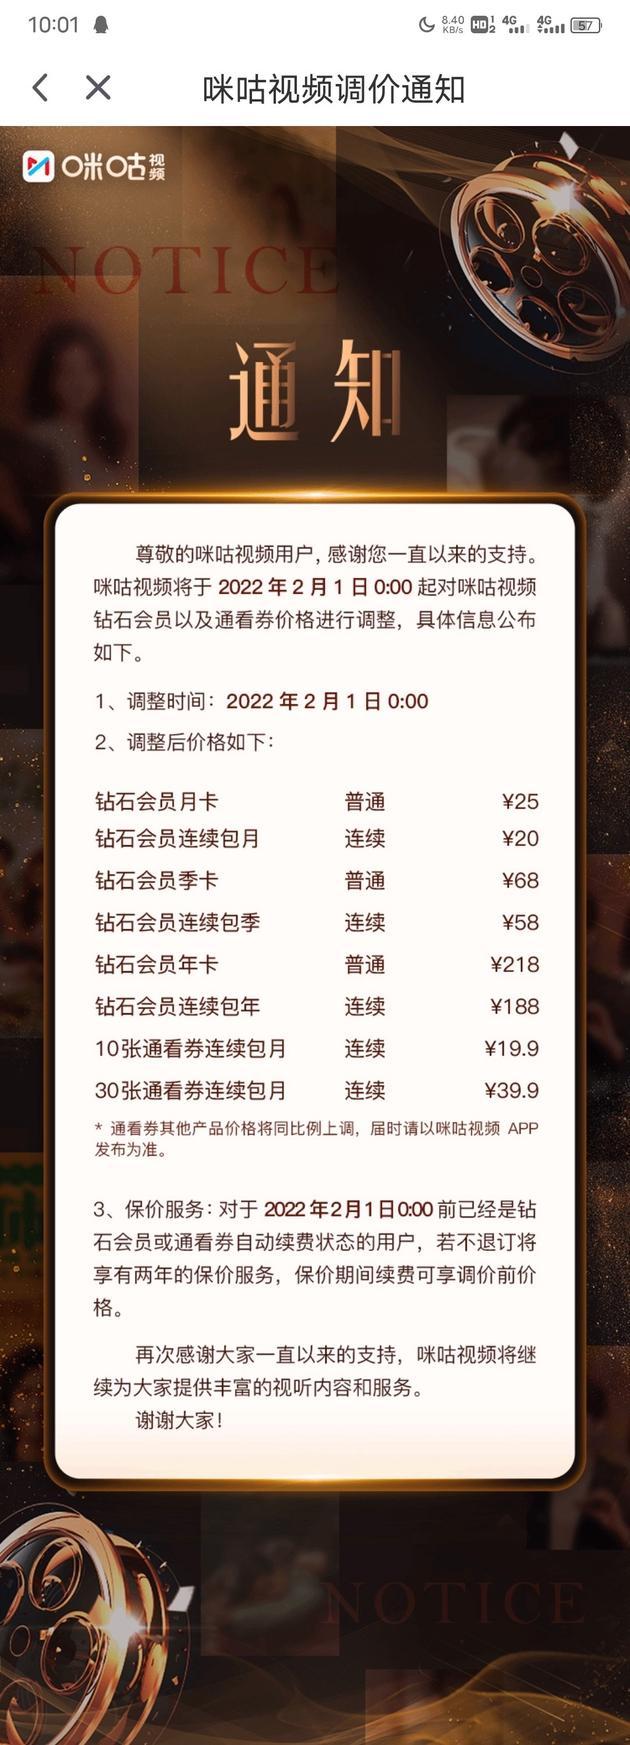 中国移动咪咕视频钻石会员涨价：连续包月20元、包年188元